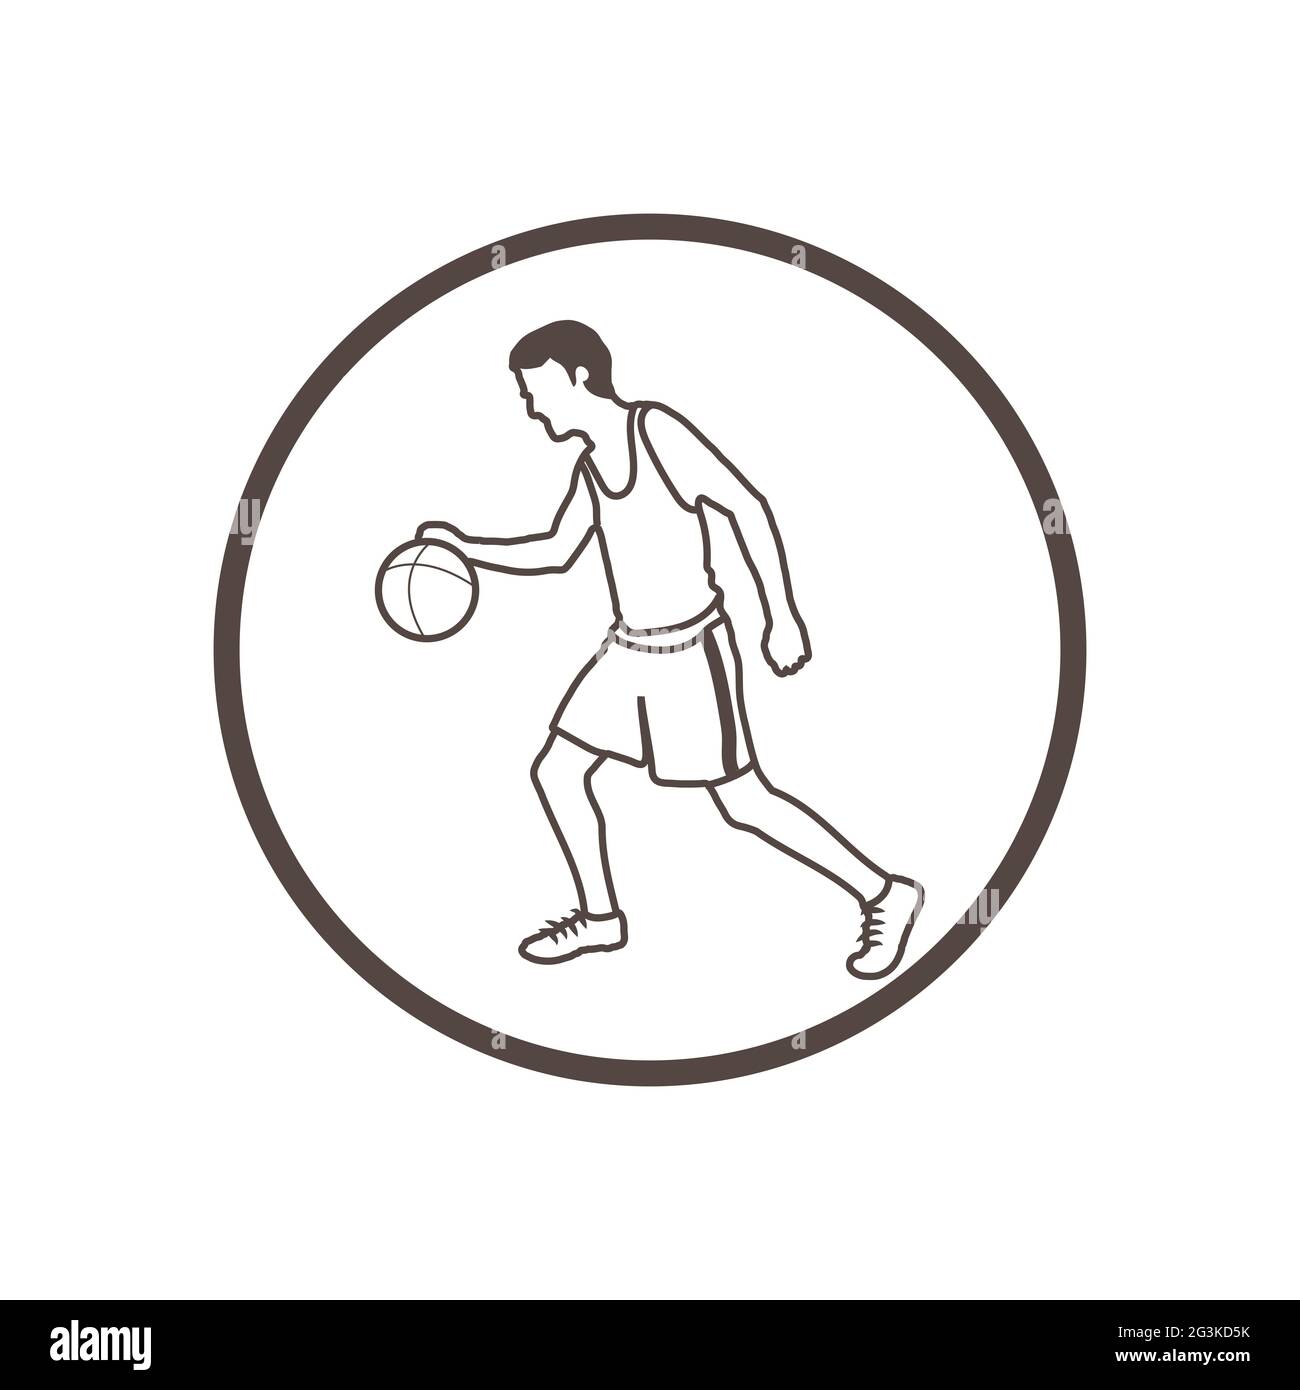 Illustration de dessin à la main, style doodle, icône joueur de basket-ball Banque D'Images